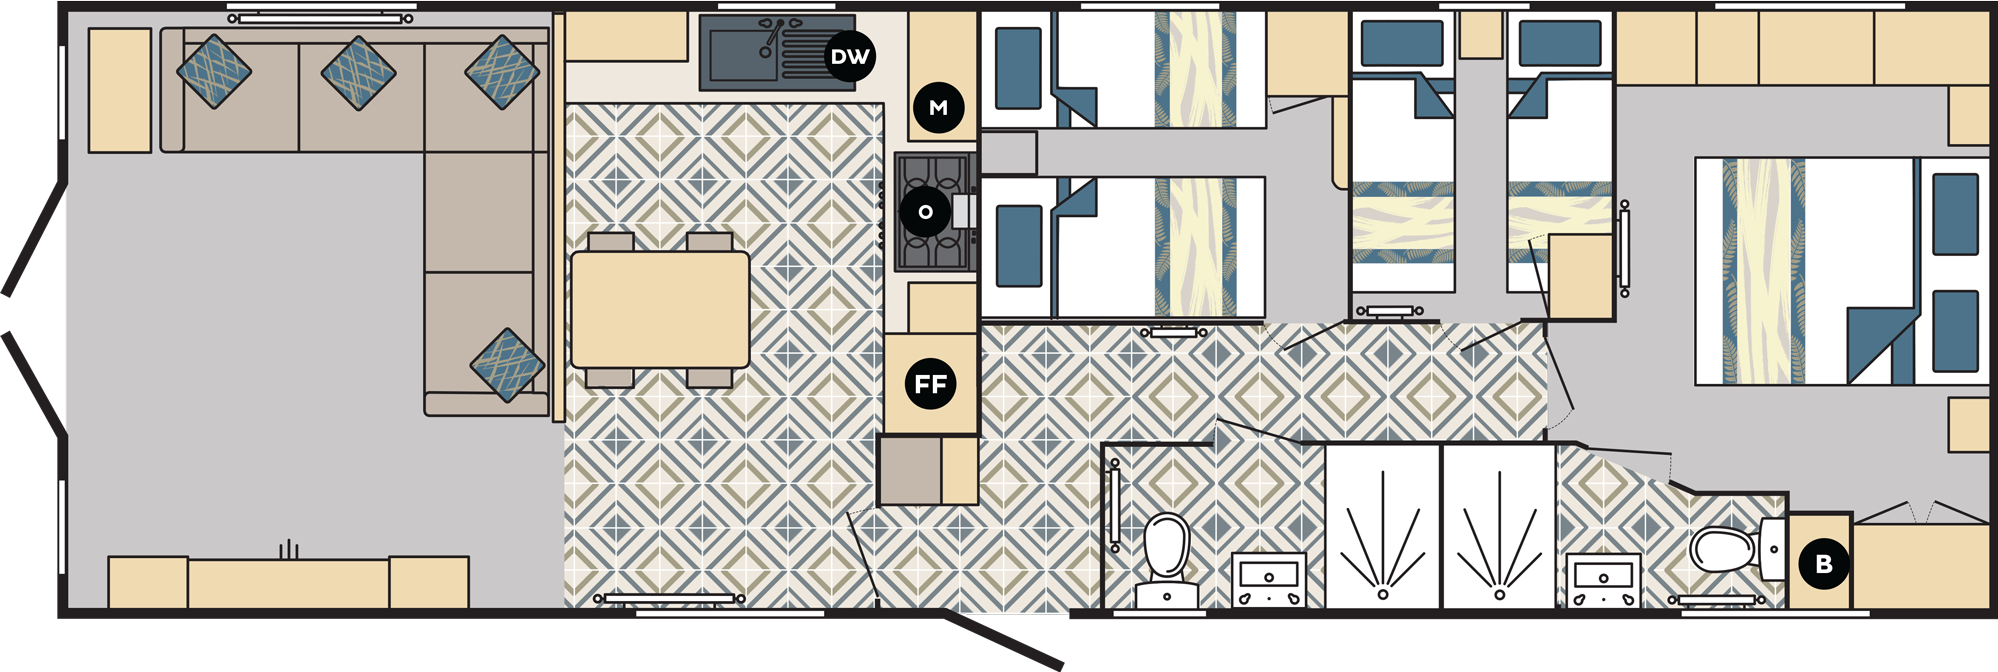 Carnaby Chantry Lodge 41x13 3 bedroom static caravan mobile home floorplan